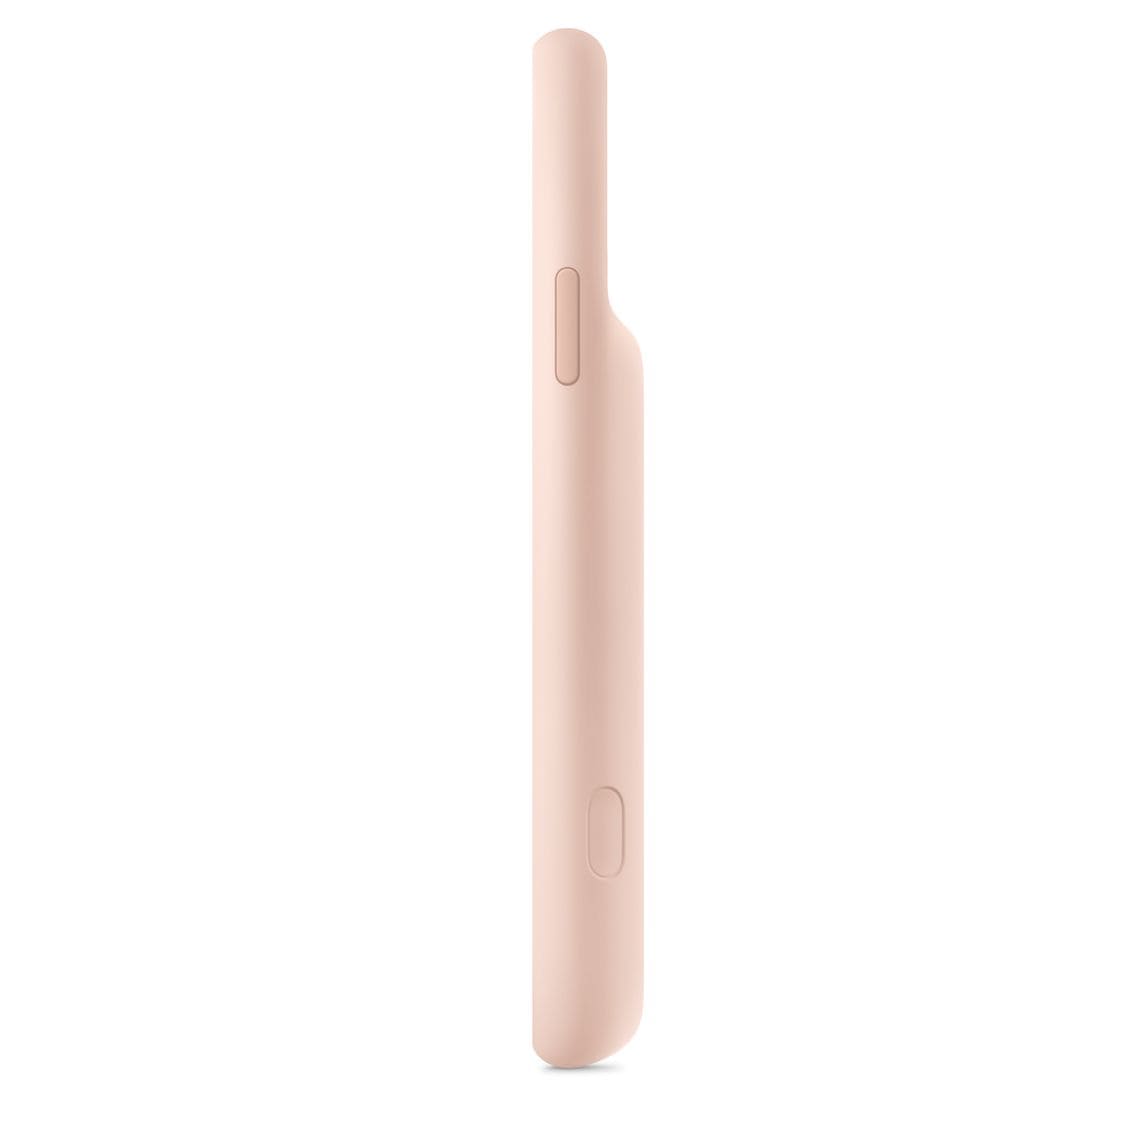 Фото — Чехол для смартфона Smart Battery Case для iPhone 11 Pro Max, «розовый песок»